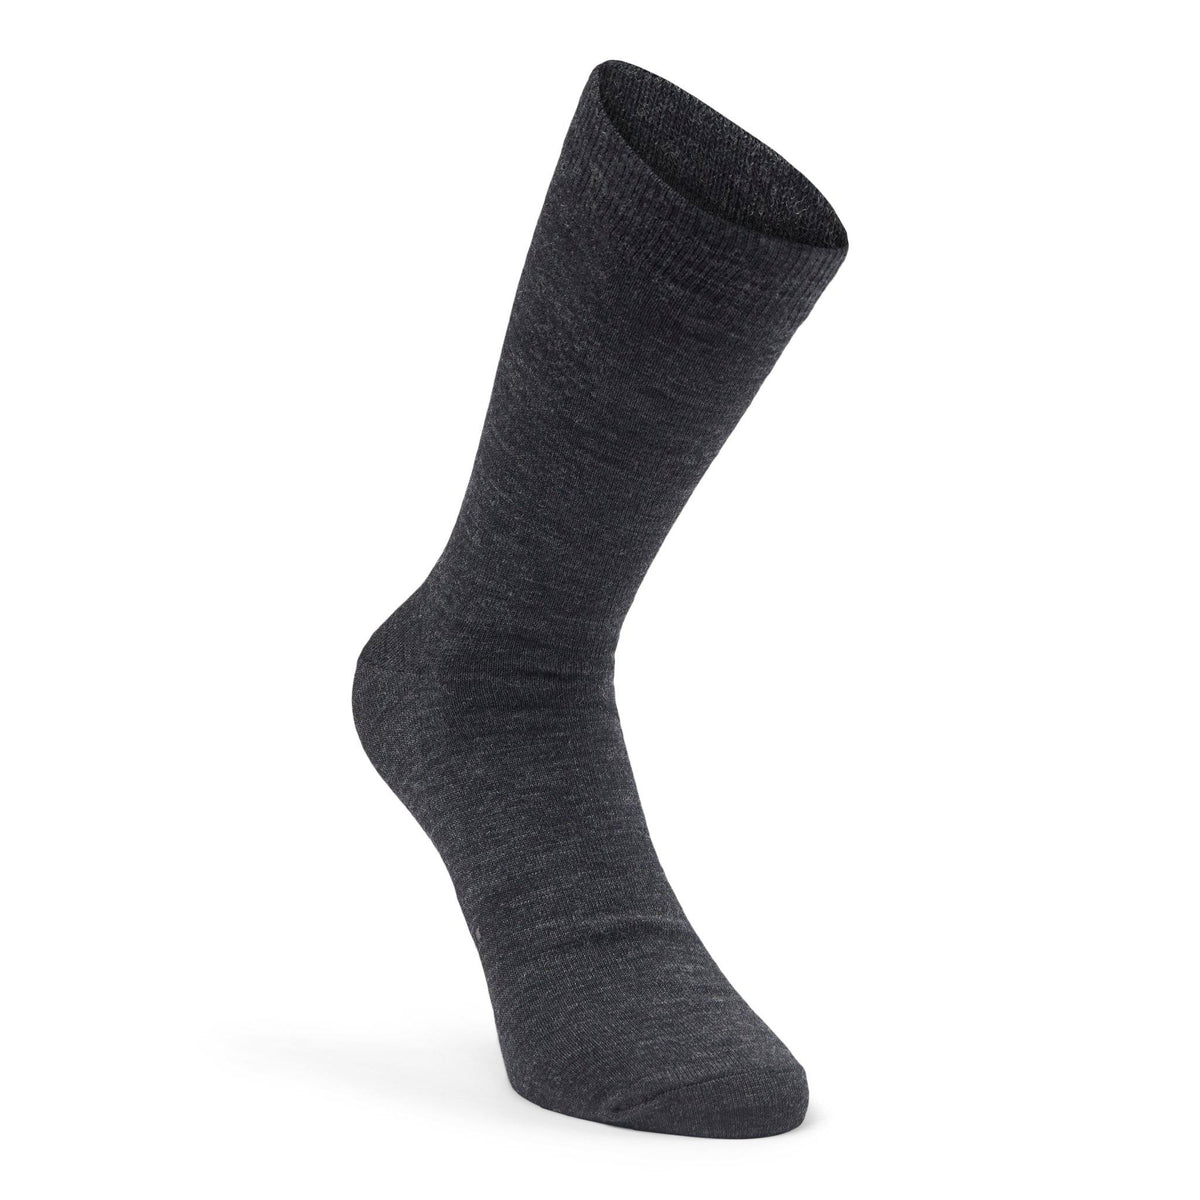 10socks – Mørkegrå sokker – 10Socks sokker – Sumisura